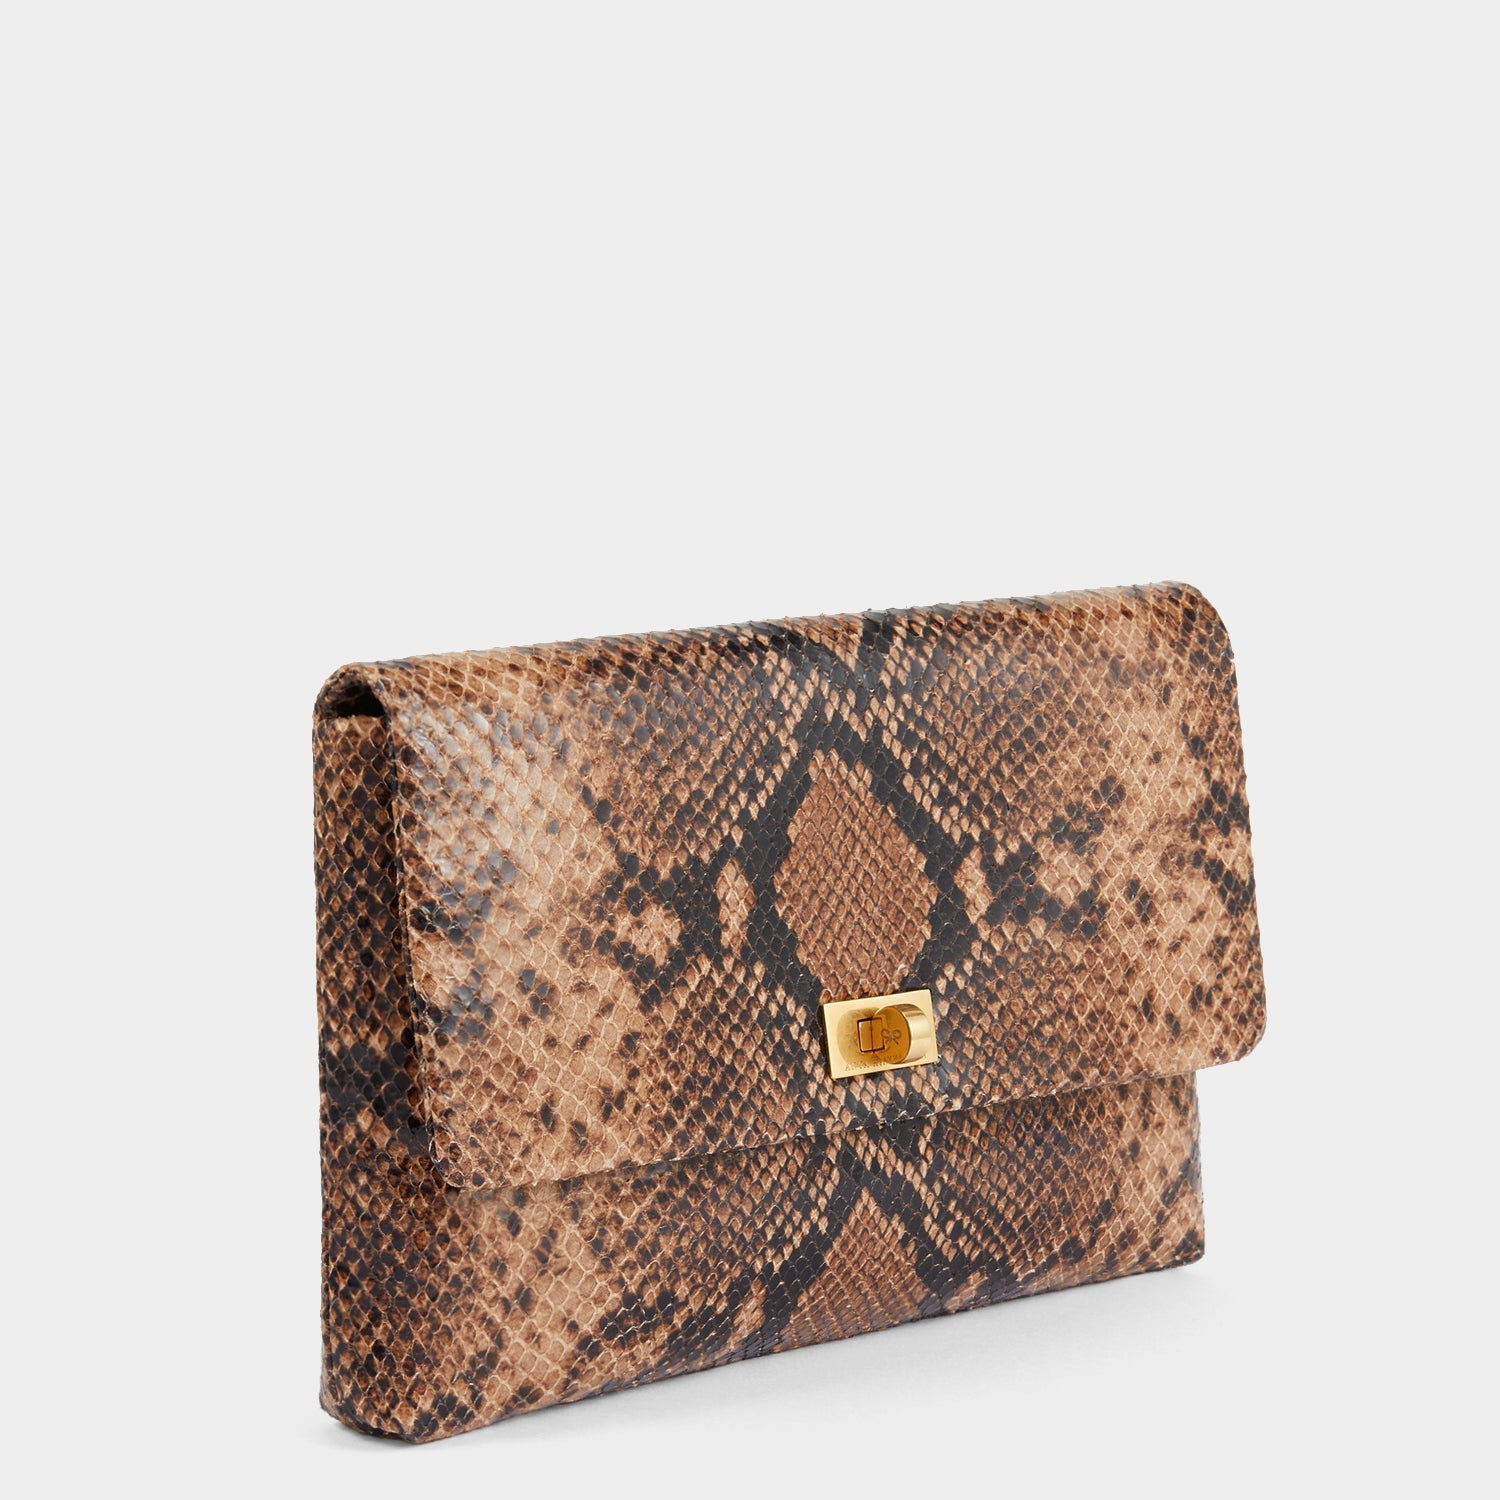 Snakeskin-patterned Clutch Bag - Brown/snakeskin-patterned